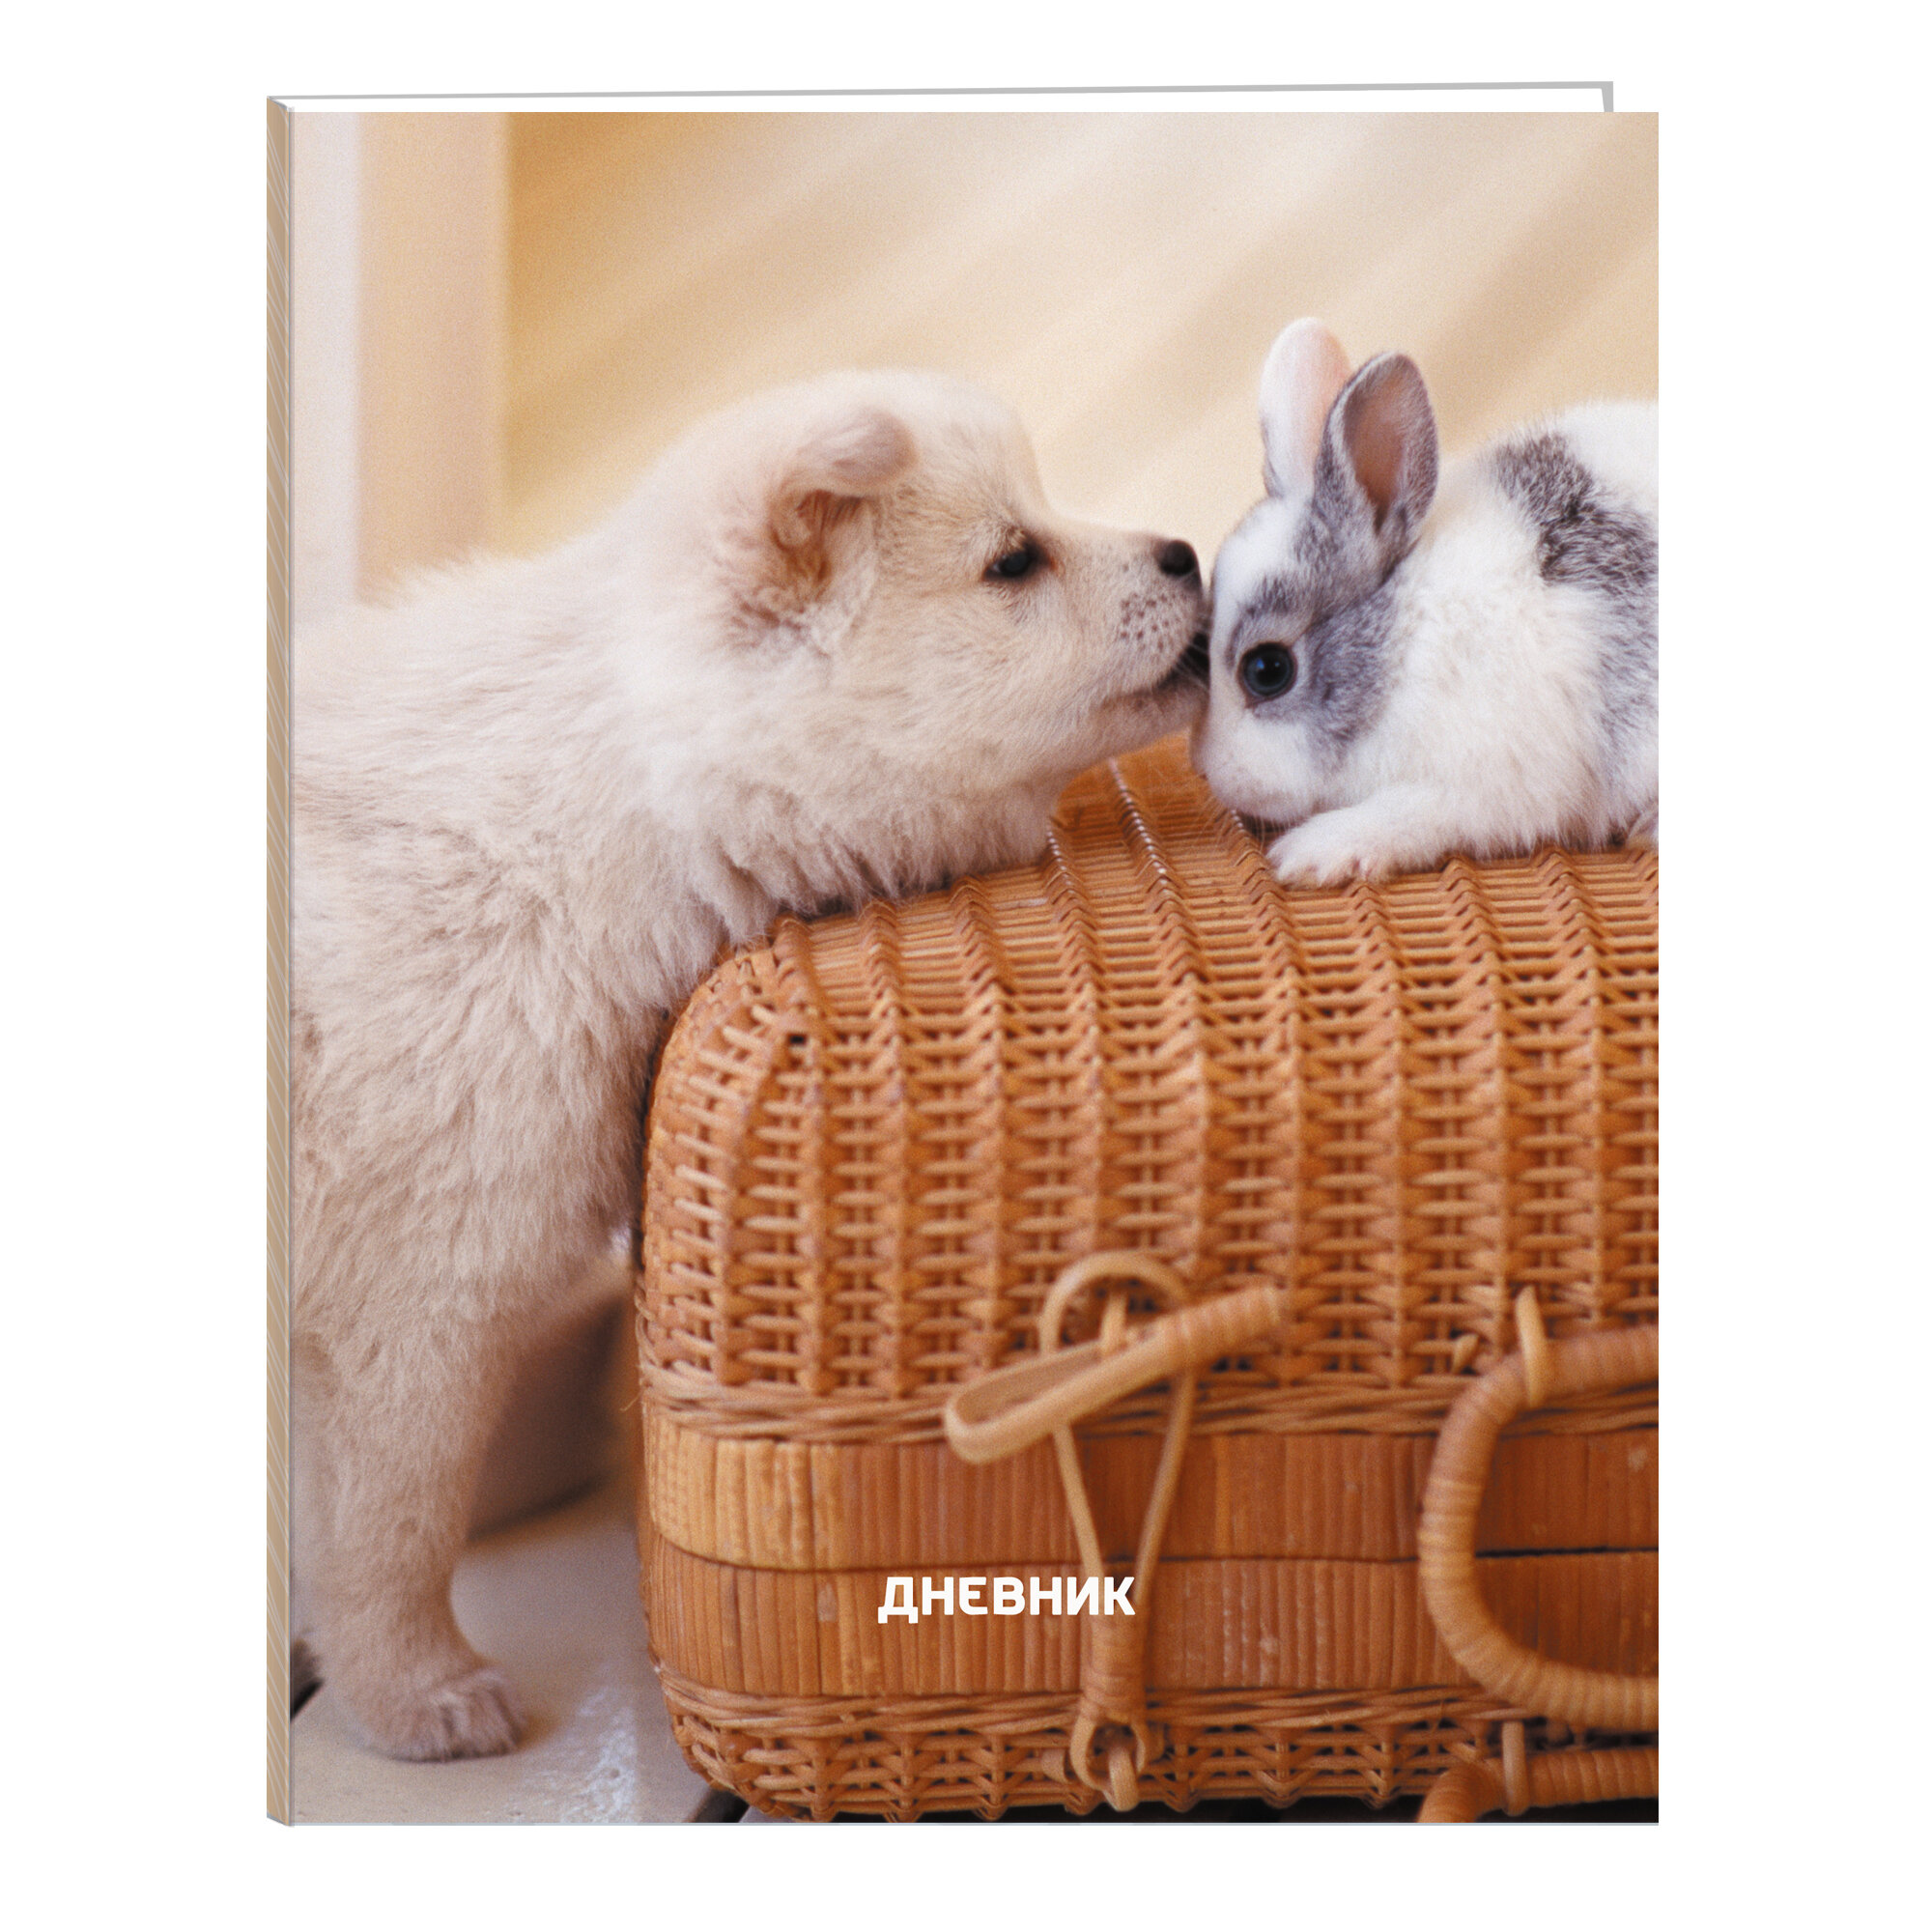 Дневник ст кл Домашние любимцы. Дизайн 2 (22) щенок и кролик